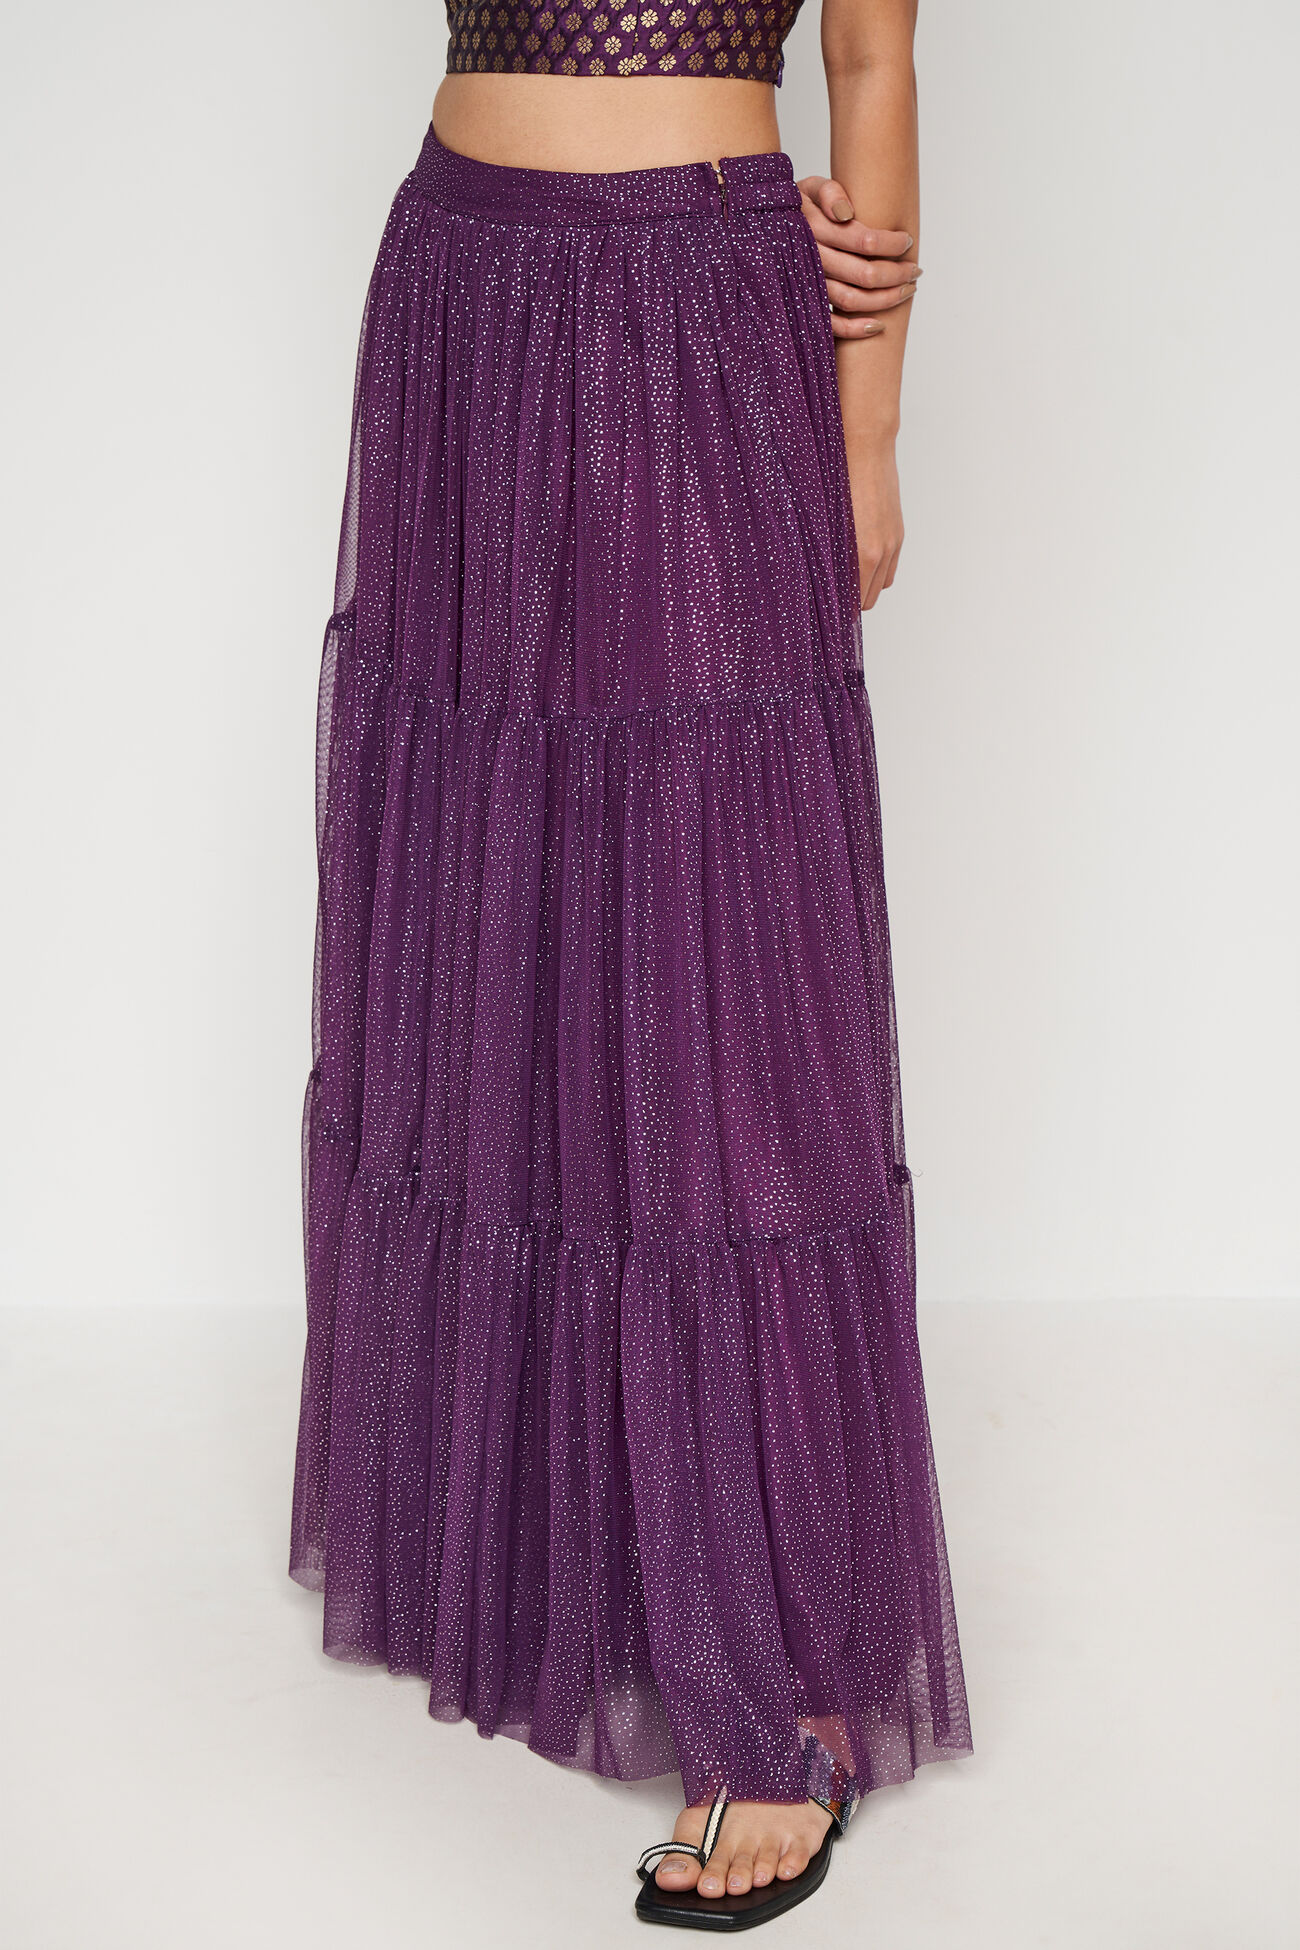 Purple Foil Print Flared Skirt, Purple, image 3